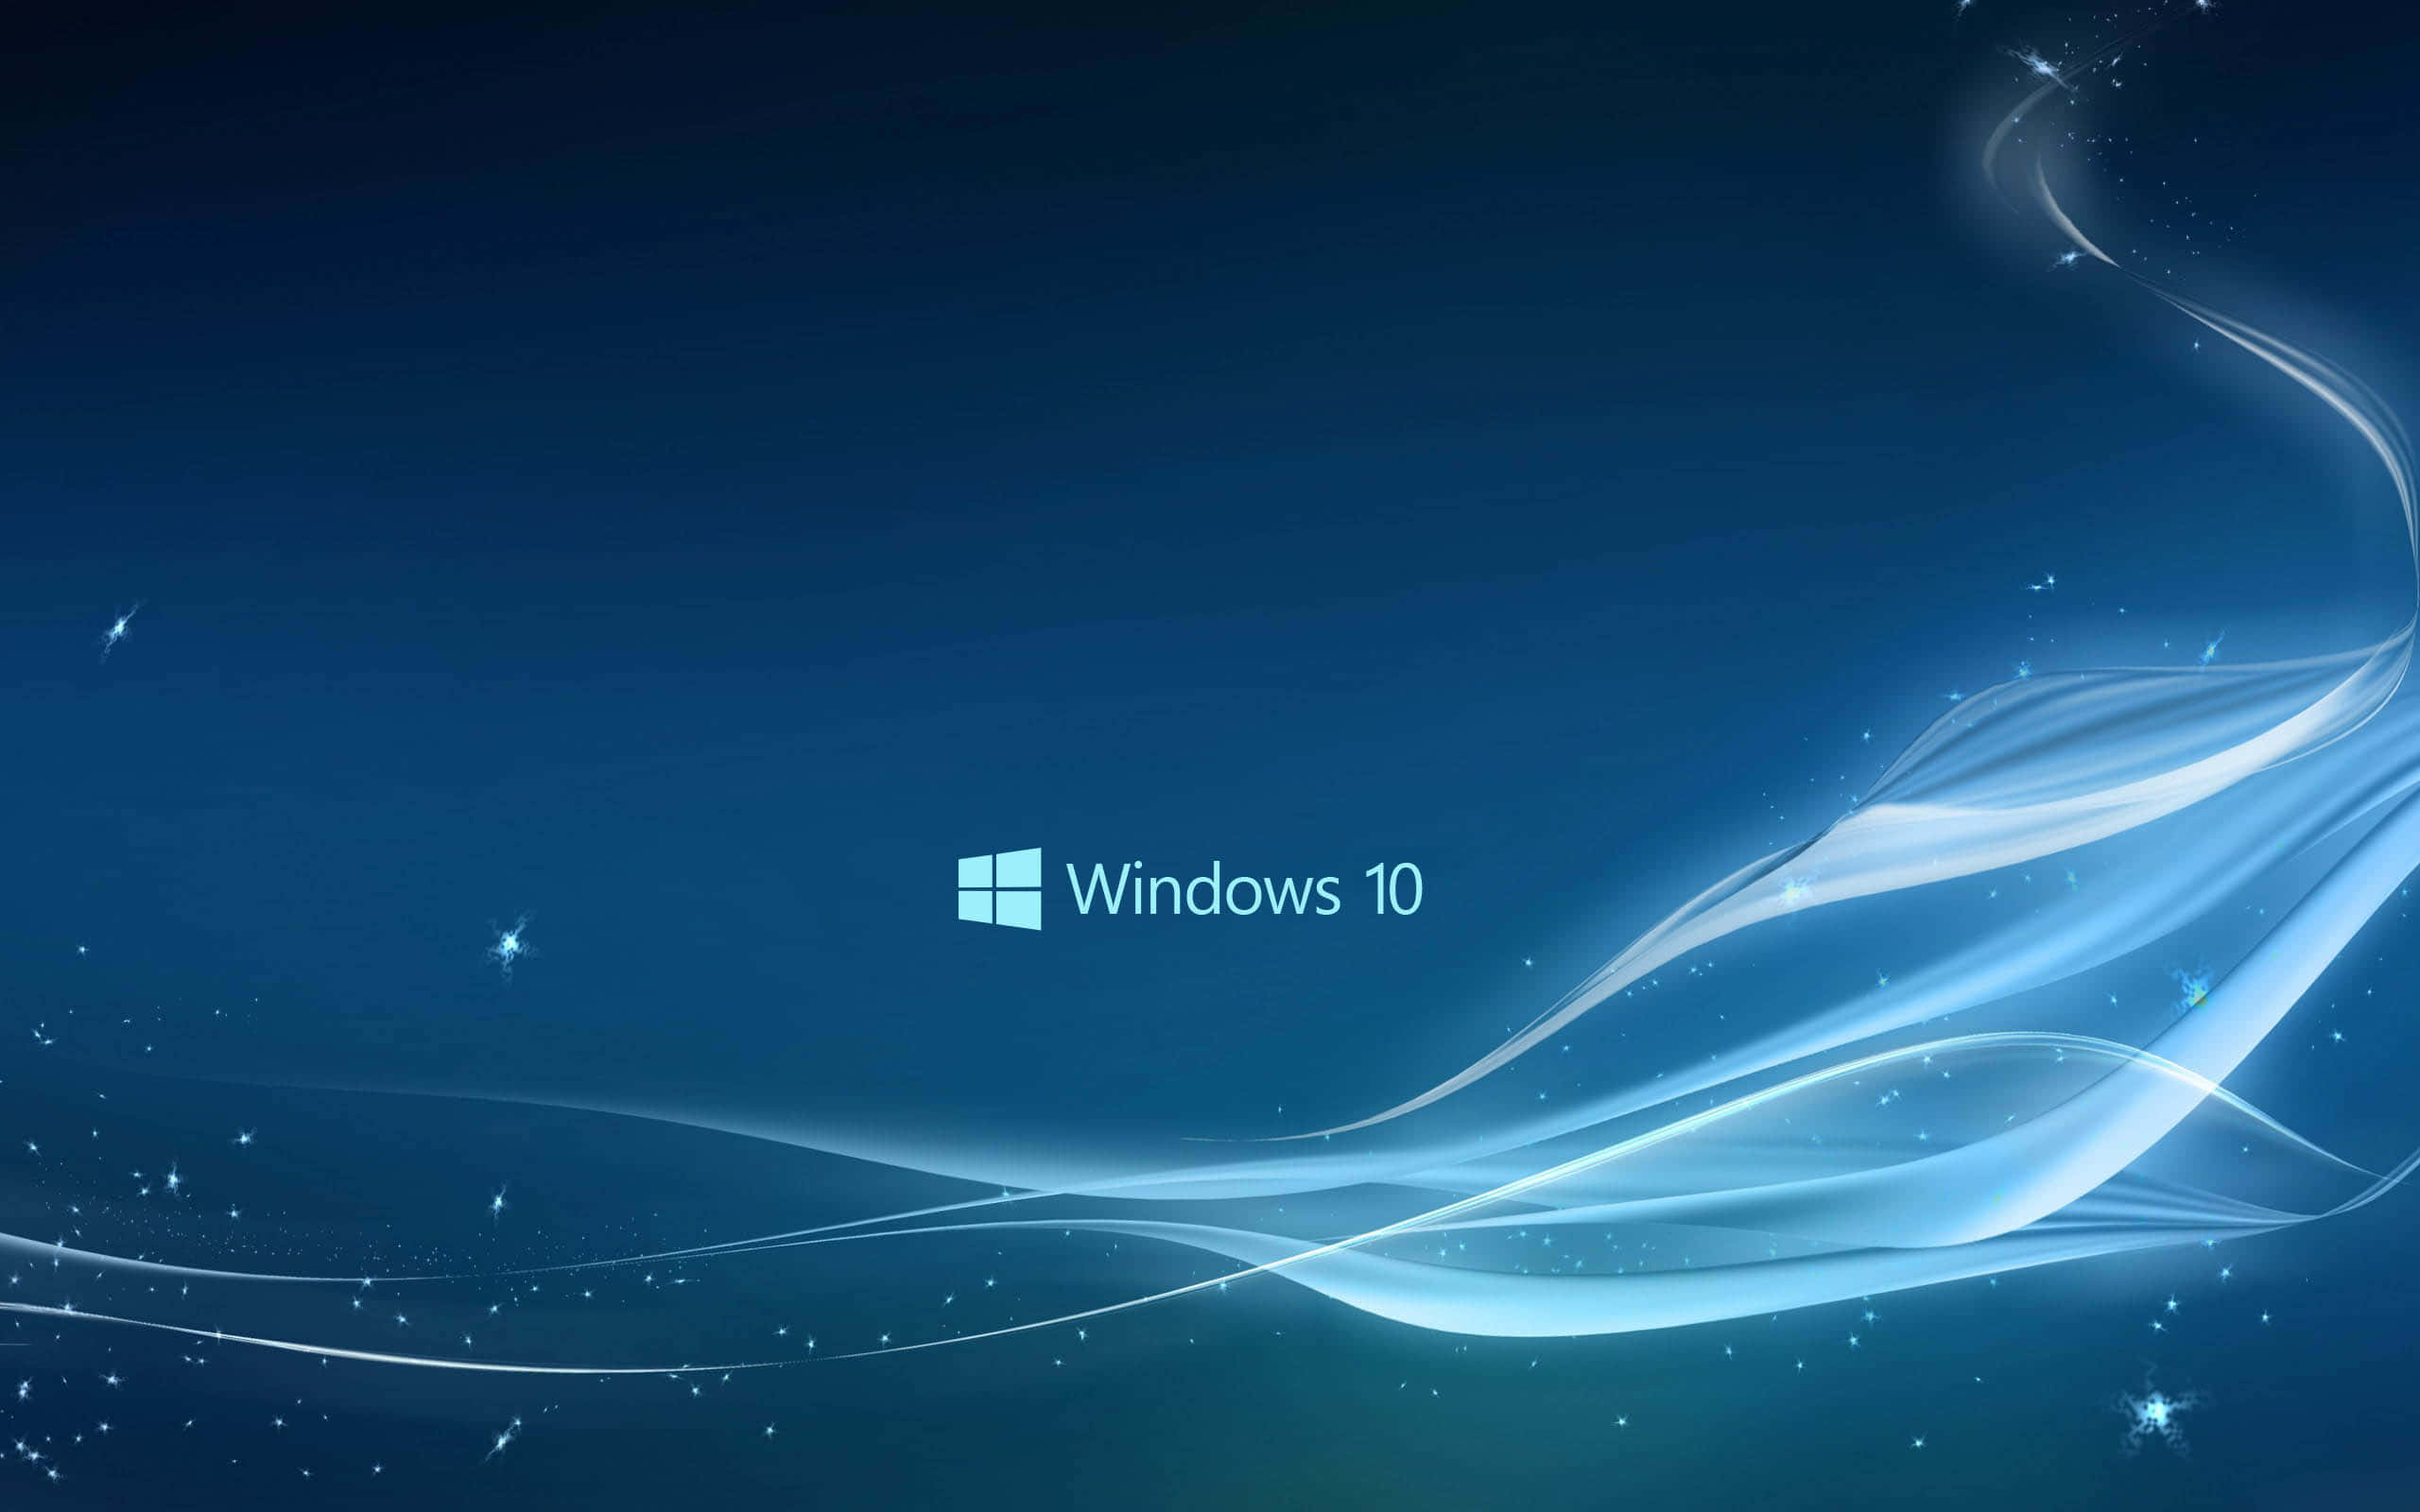 Novomundo Brilhante Do Windows 10